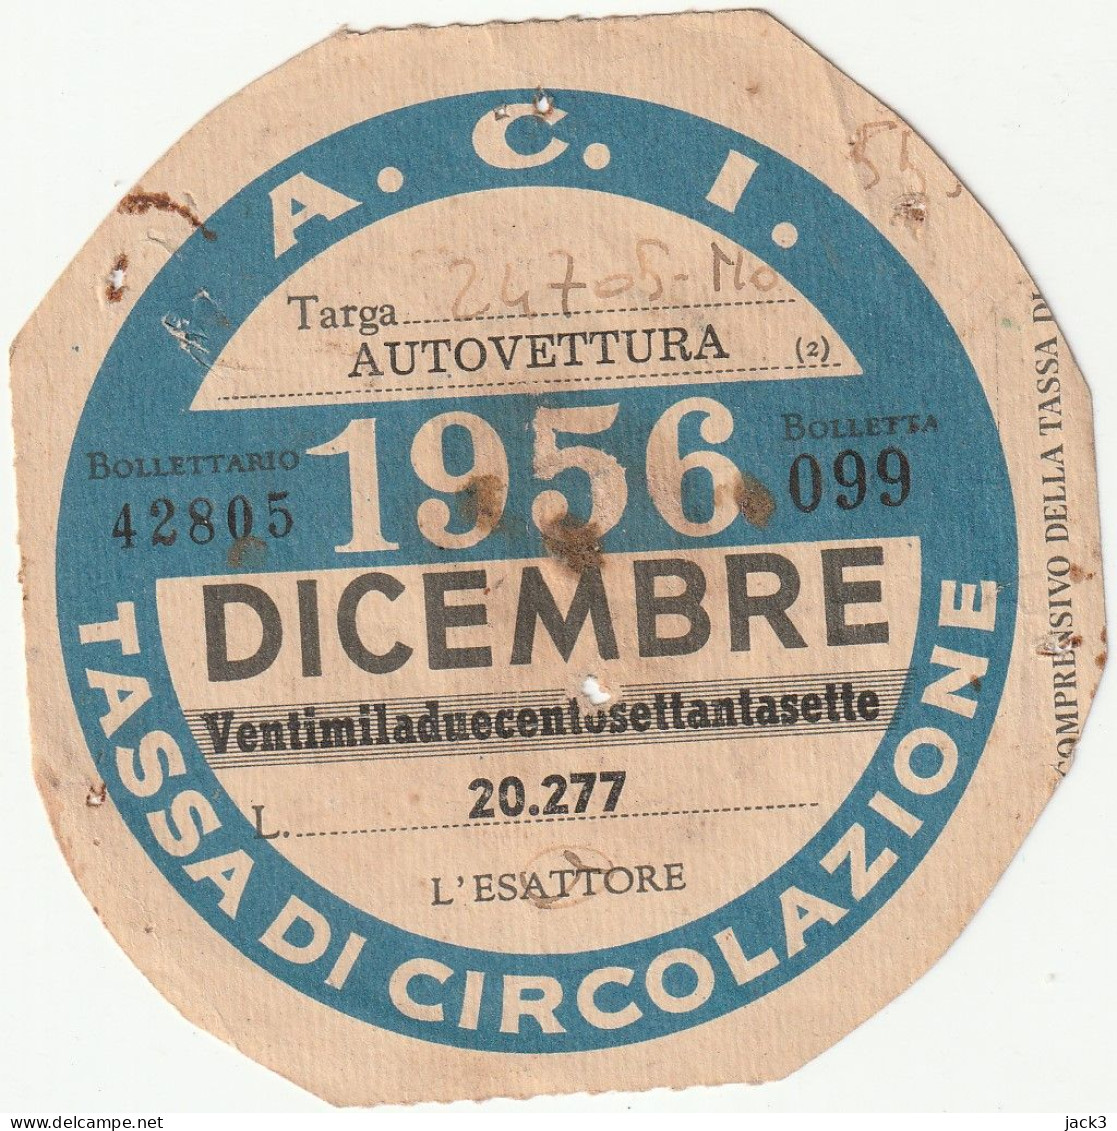 BOLLO DI CIRCOLAZIONE - DICEMBRE 1956 - Voitures